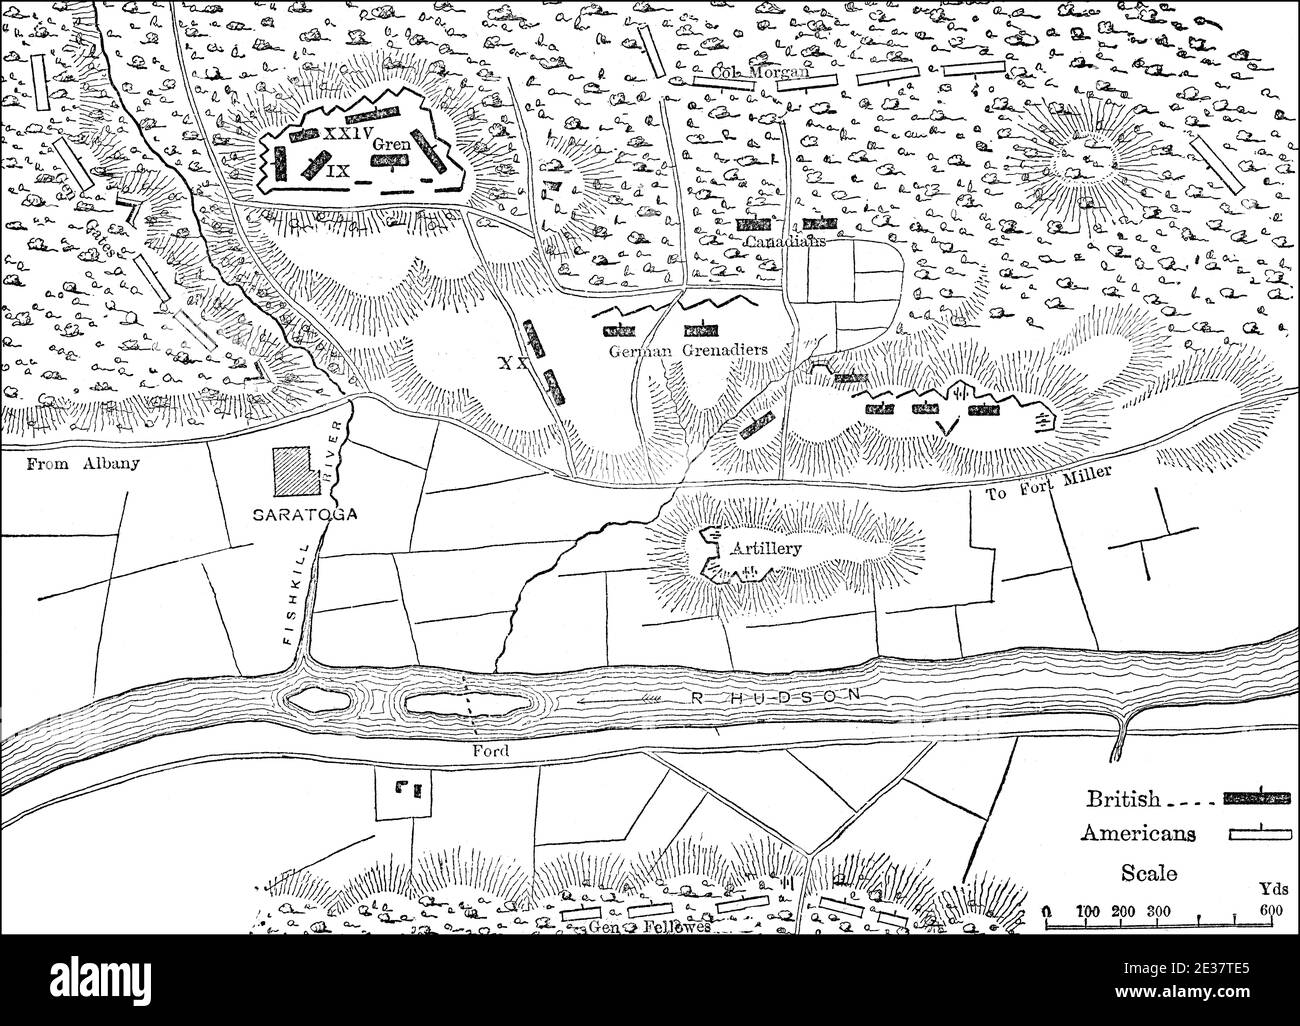 Plan des Schlachtfeldes der Saratoga-Kampagne, 19. September 1777, amerikanischer revolutionärer Krieg Stockfoto